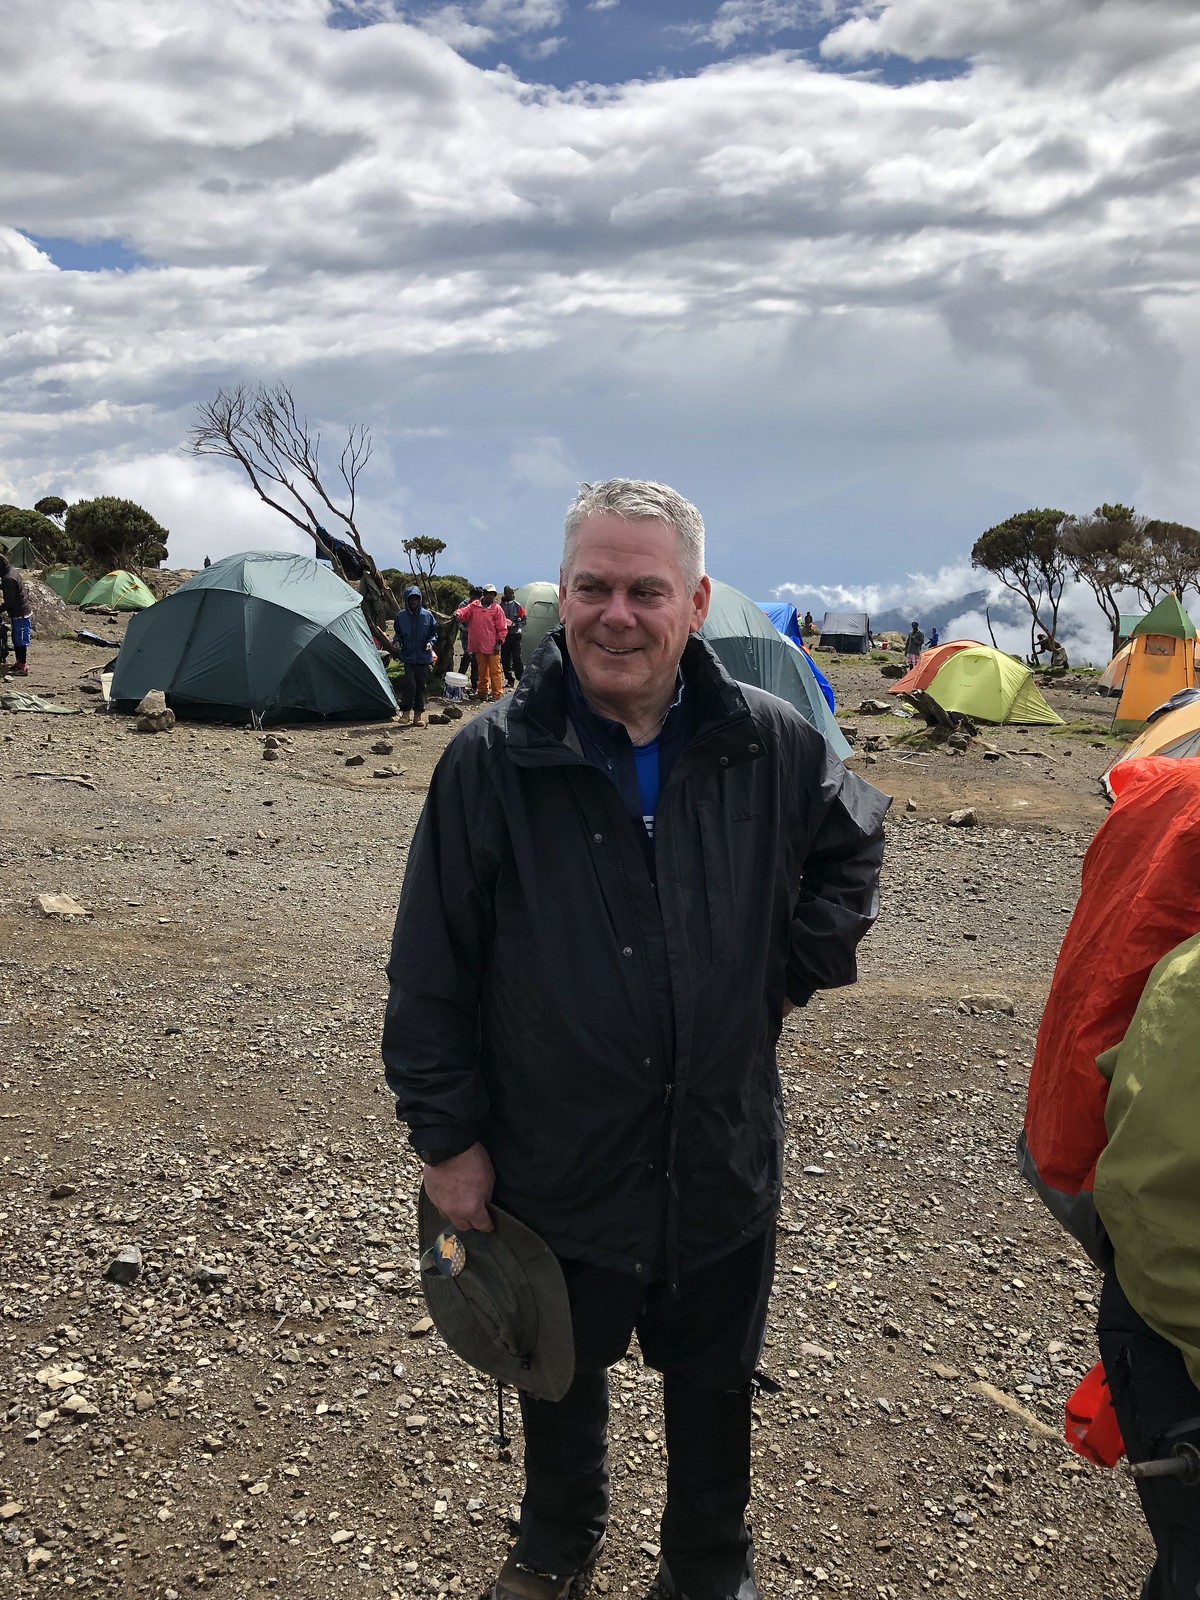 2019_EXPD_Kilimanjaro_Ashley 14